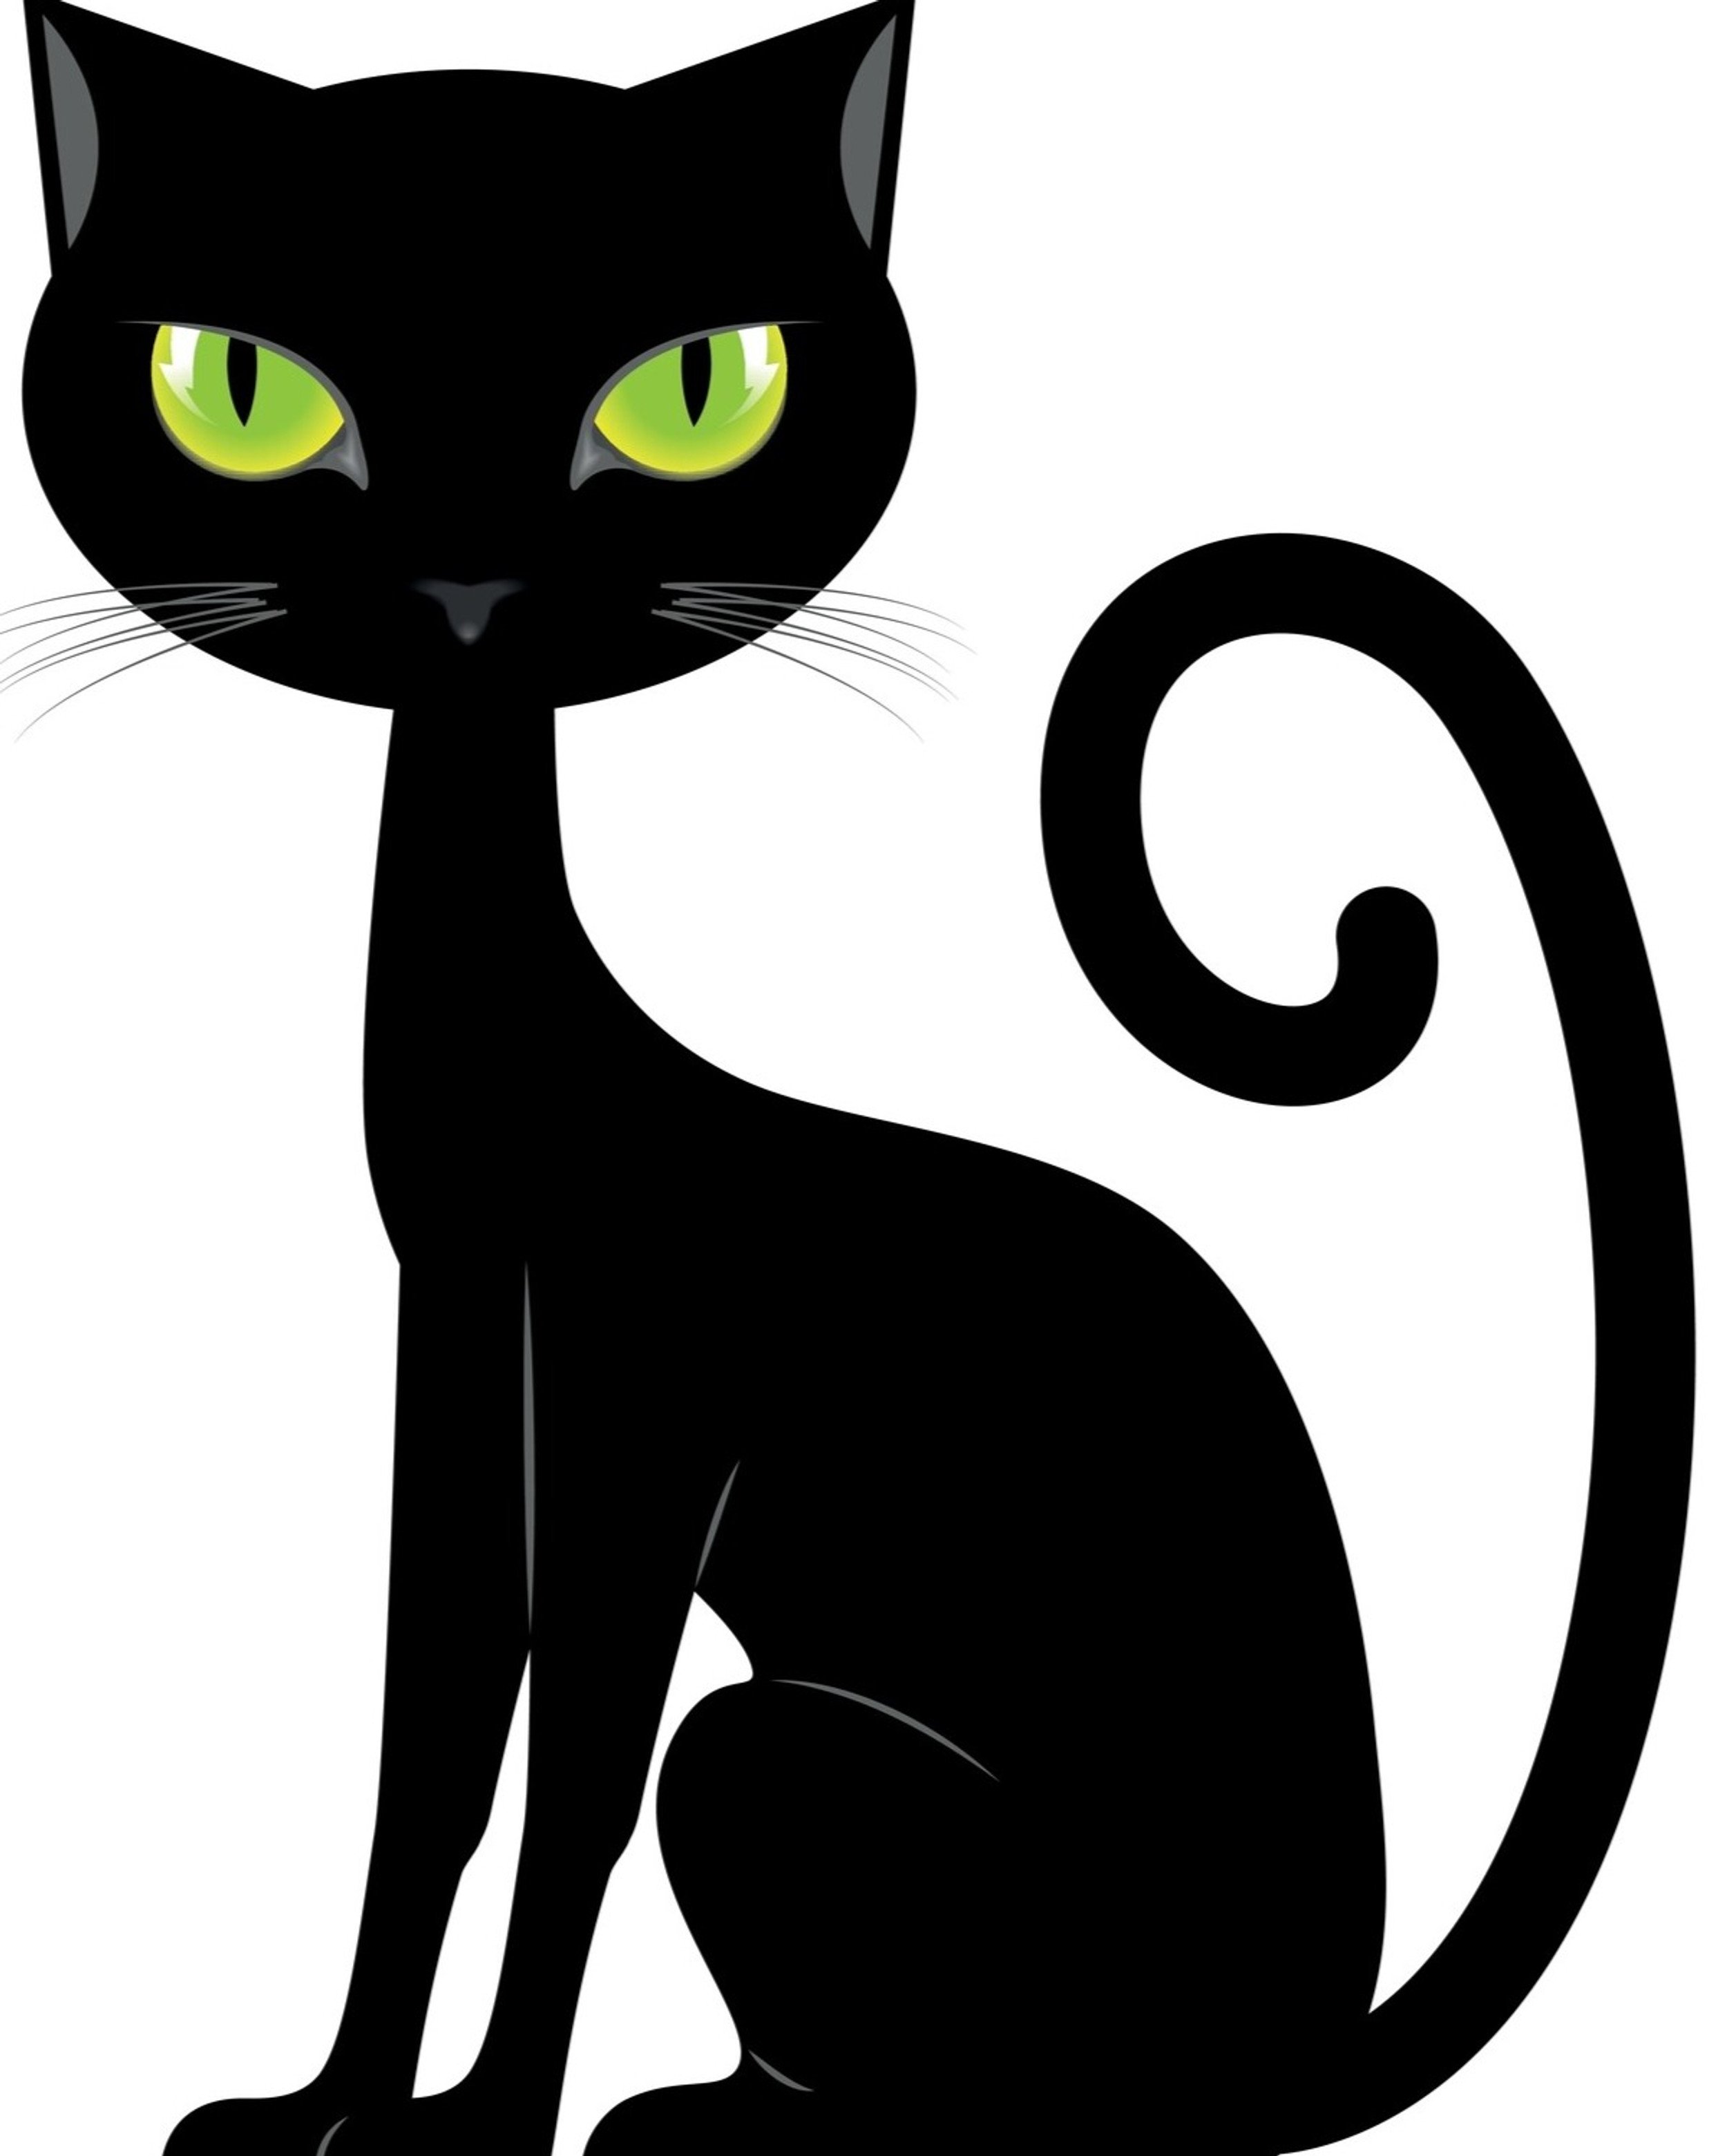 Черный кот распечатать. Черный кот нарисованный. Черная кошка мультяшная. Черная кошка рисунок. Черный кот на белом фоне.